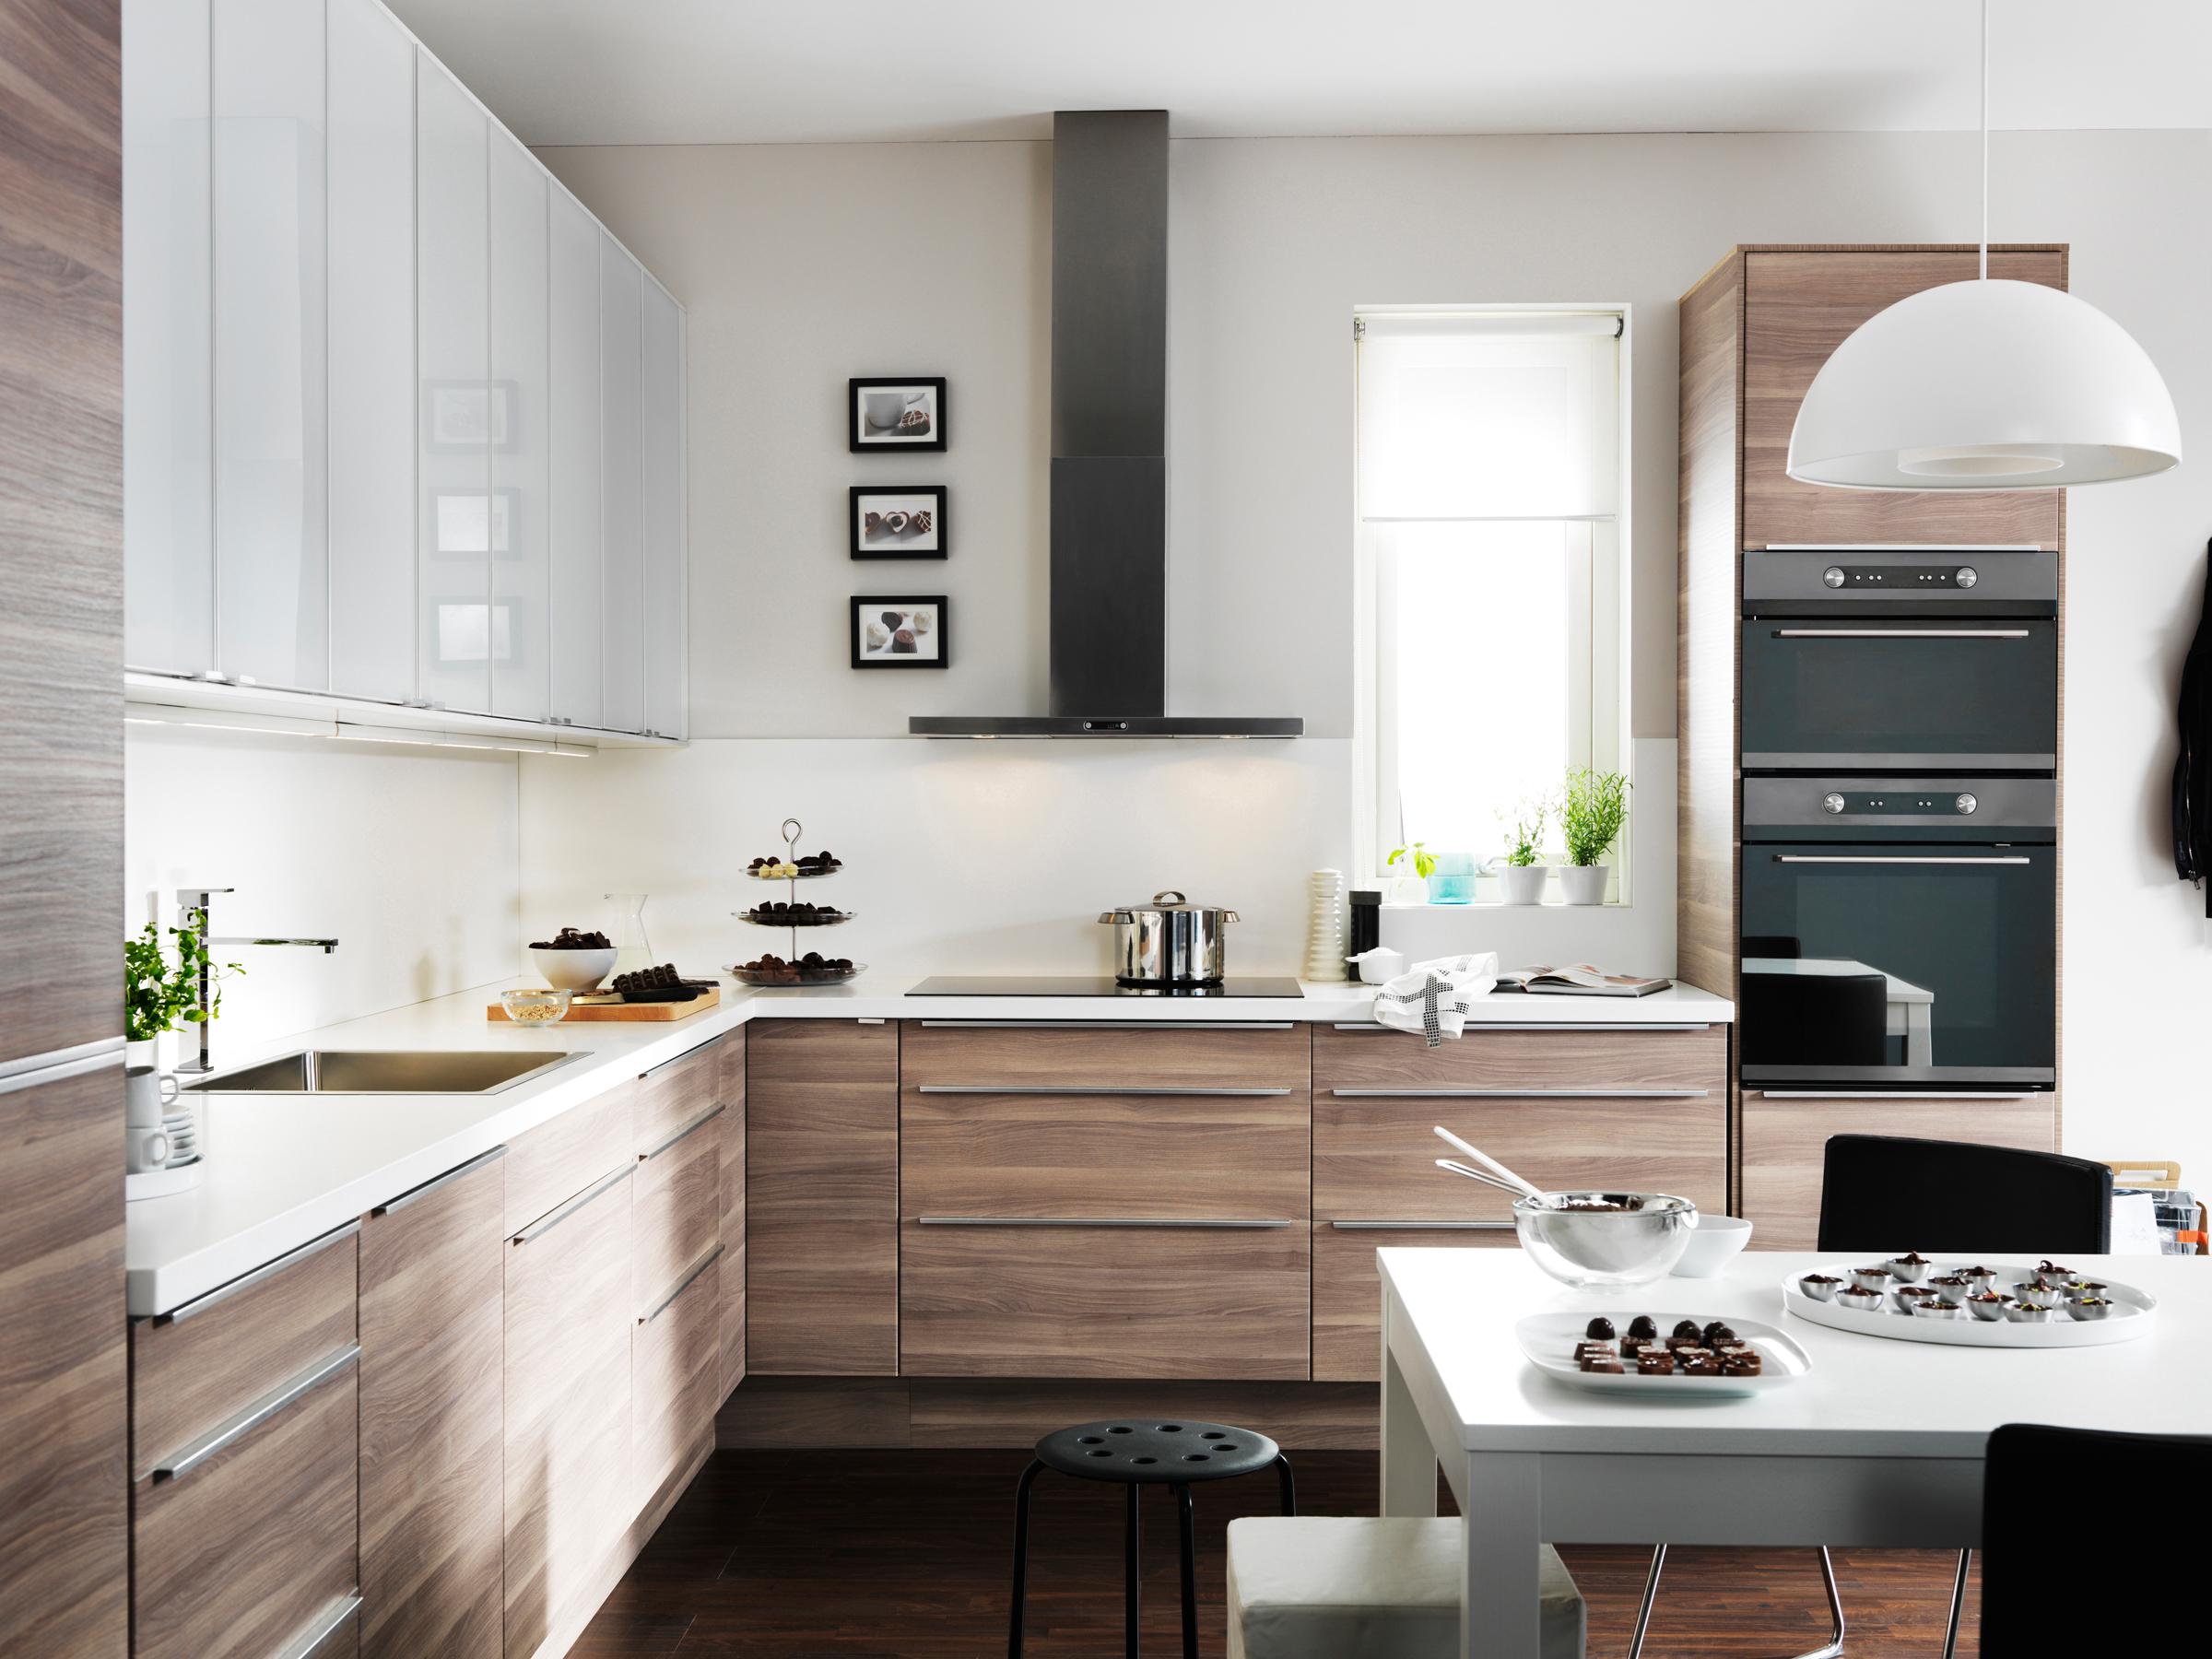 Küchenschränke aus Holz in geräumiger Wohnküche #dunstabzugshaube ©Inter IKEA Systems B.V